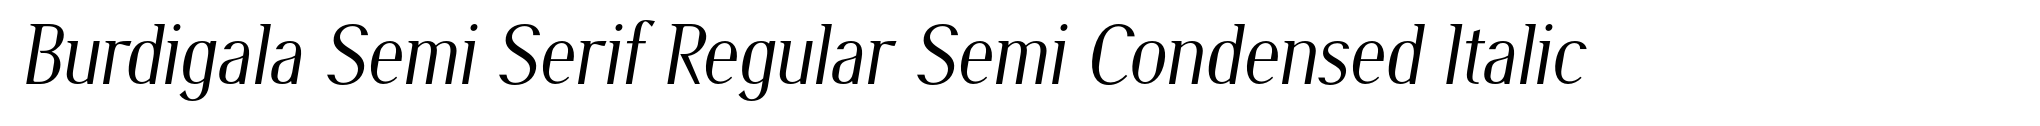 Burdigala Semi Serif Regular Semi Condensed Italic image